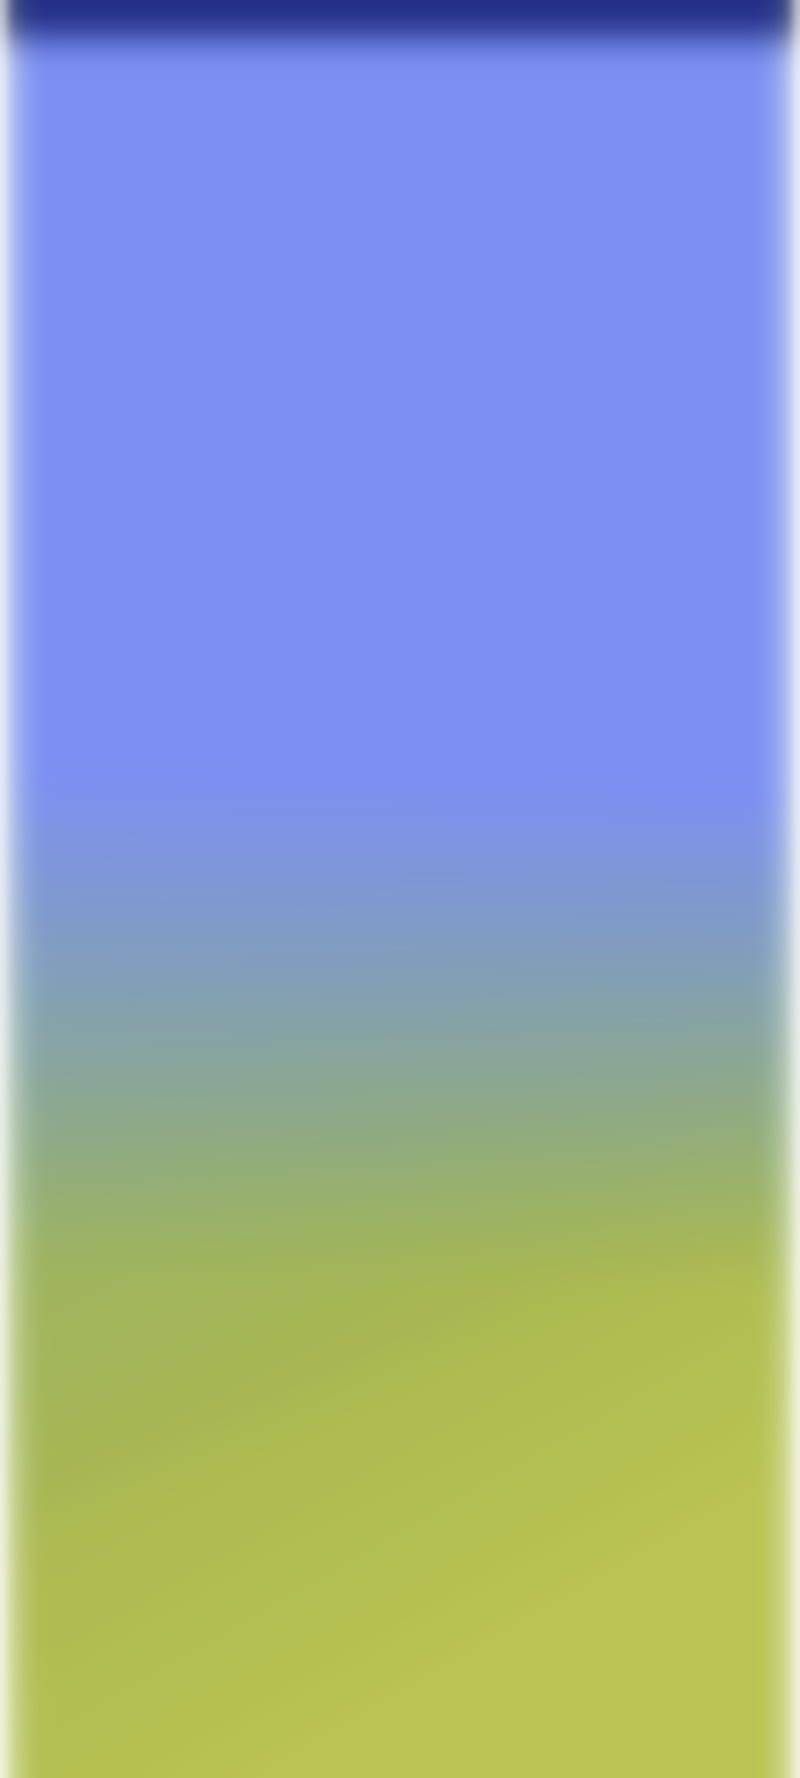 Màu Gradient xanh da trời là một sự kết hợp giữa màu xanh và xám trắng, tạo nên một màu sắc độc đáo và hoàn toàn riêng biệt. Hãy cùng đến với những bức ảnh đẹp với màu sắc Gradient xanh da trời, tìm thấy sự sáng tạo và độc đáo trong từng bức tranh.